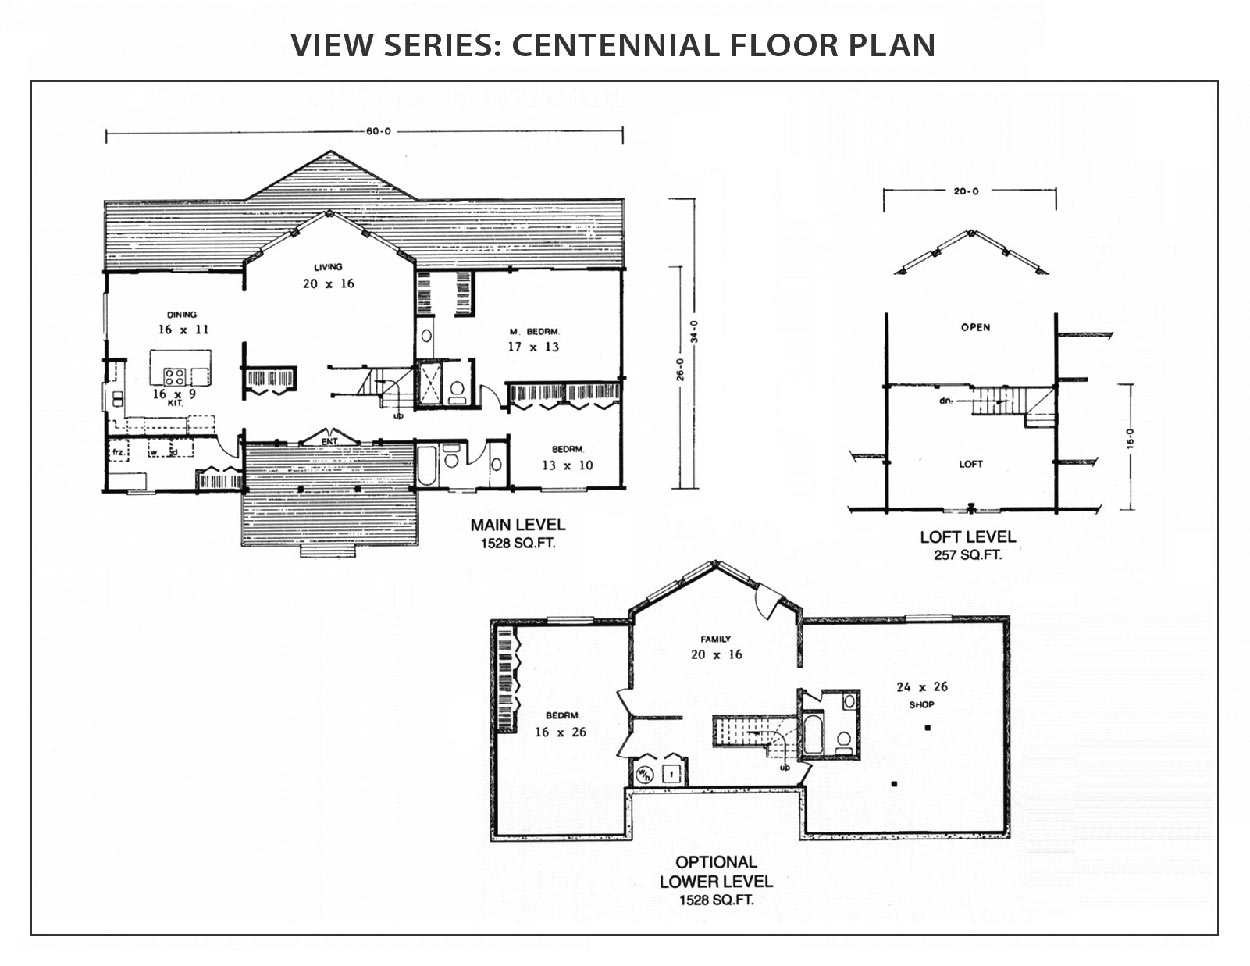 Centennial Floor Plan View Series IHC